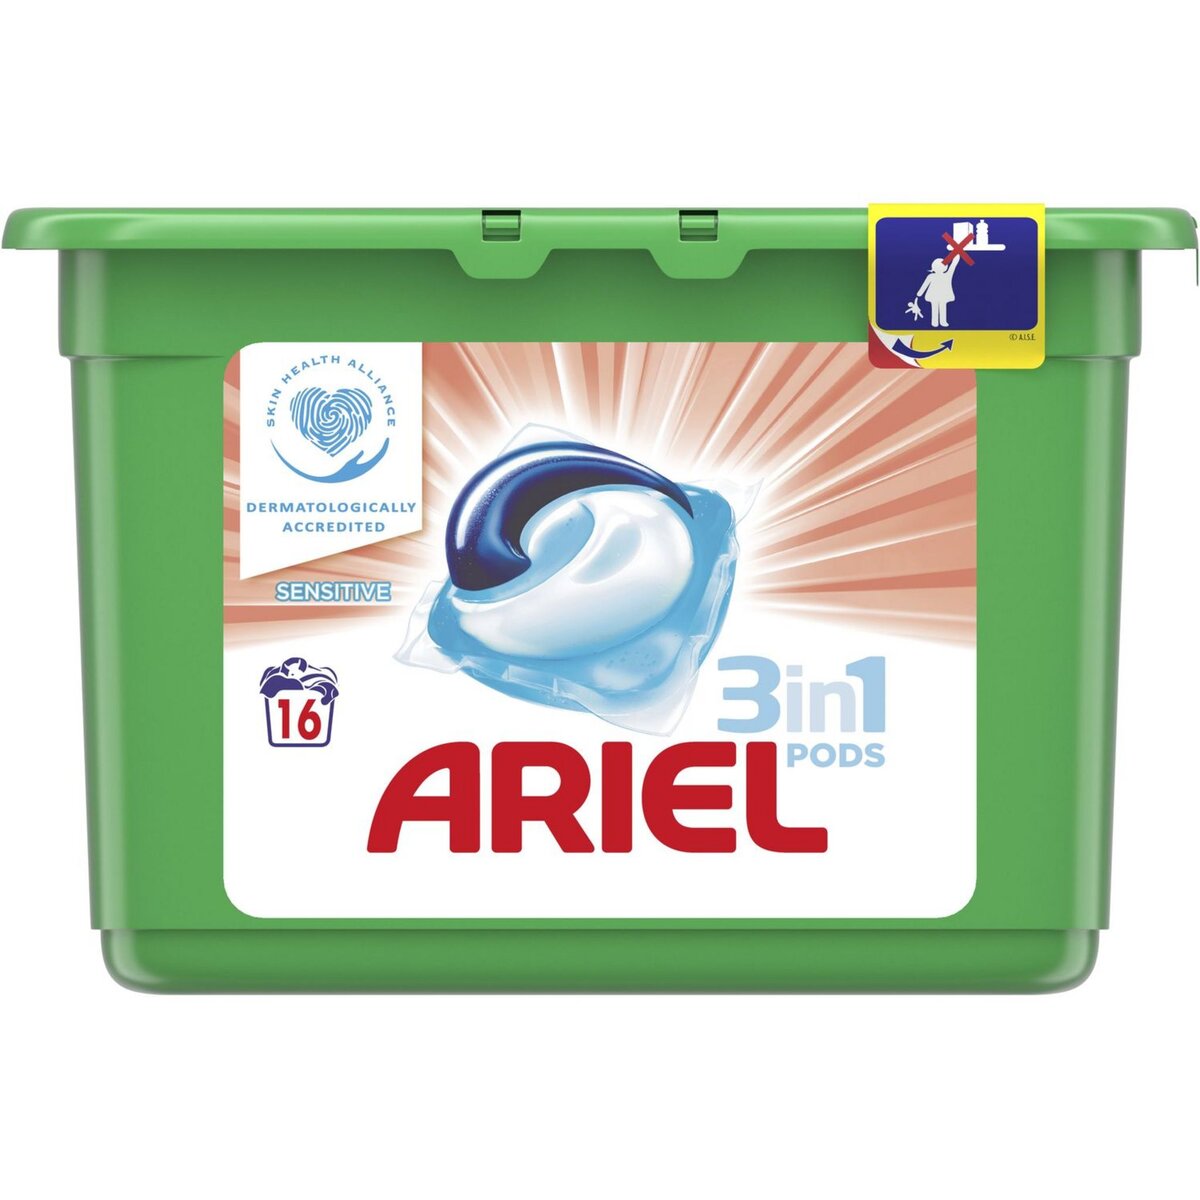 ARIEL Ariel pods lessive ecodoses sensitive x16 -0,425l